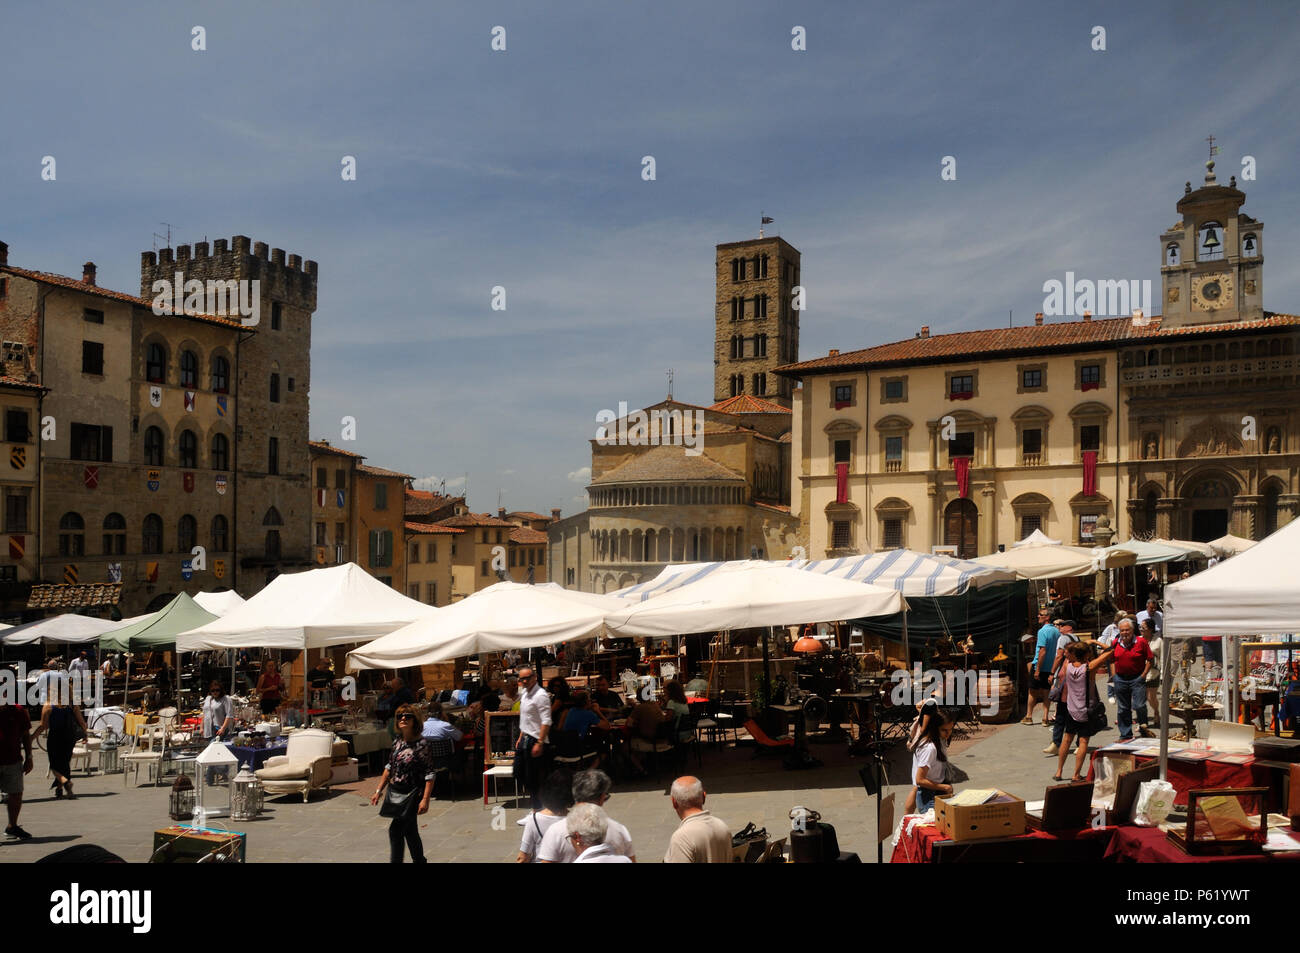 Eine der monatlichen Antiquarische Messen von Arezzo in der Piazza Grande, Arezzo, Toskana, Italien Stockfoto